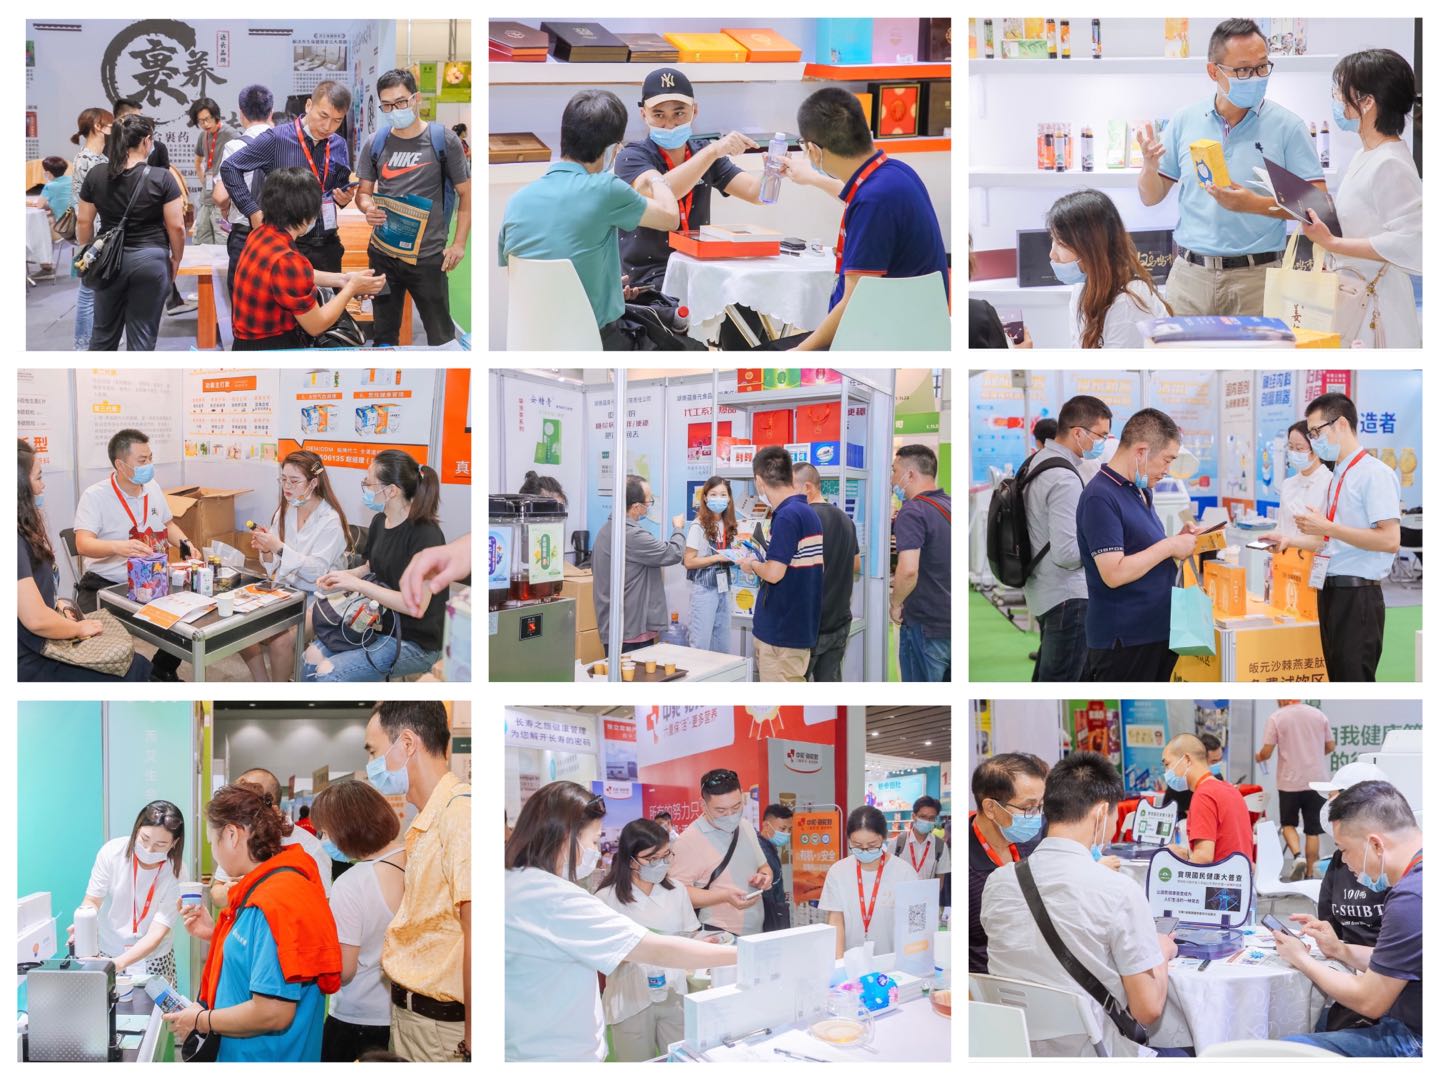 2022第31届广州国际大健康产业博览会